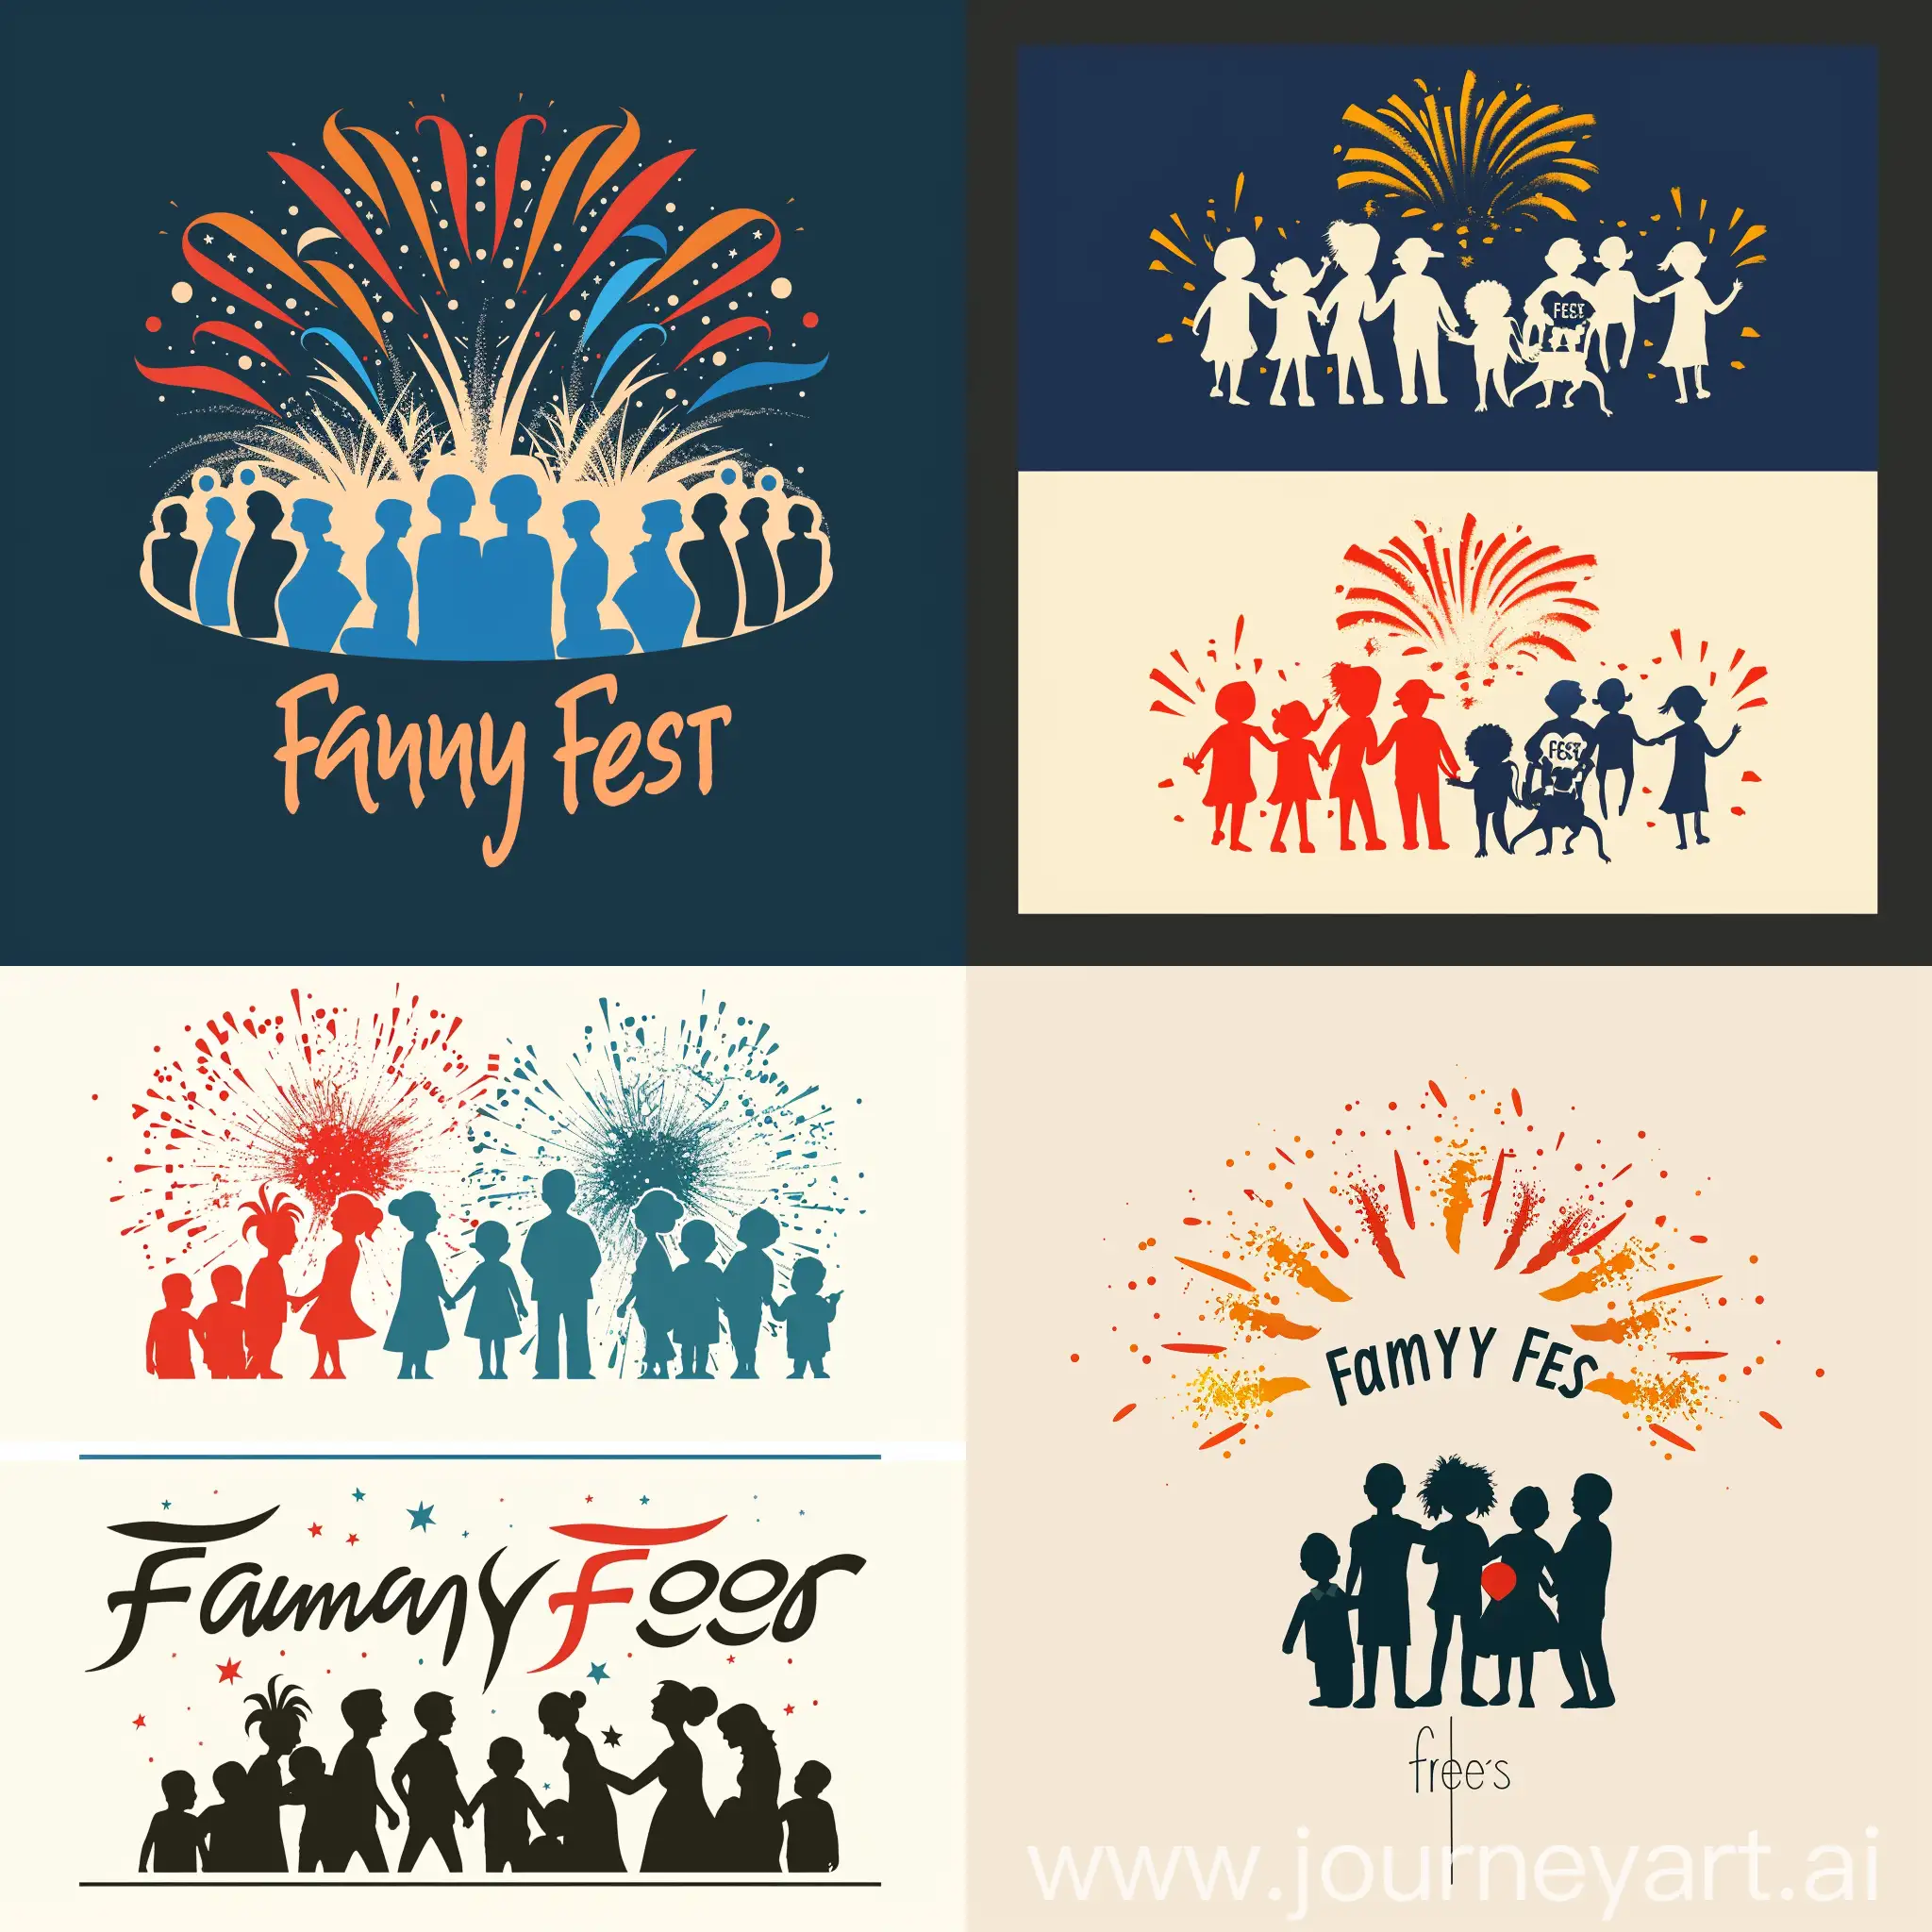 haz una propuesta de un logo que represente la frase "Family FEst". A dos colores. Pueden ser siluetas de personas, de manera minimalista con fondo de un firework o algo que represente fiesta
